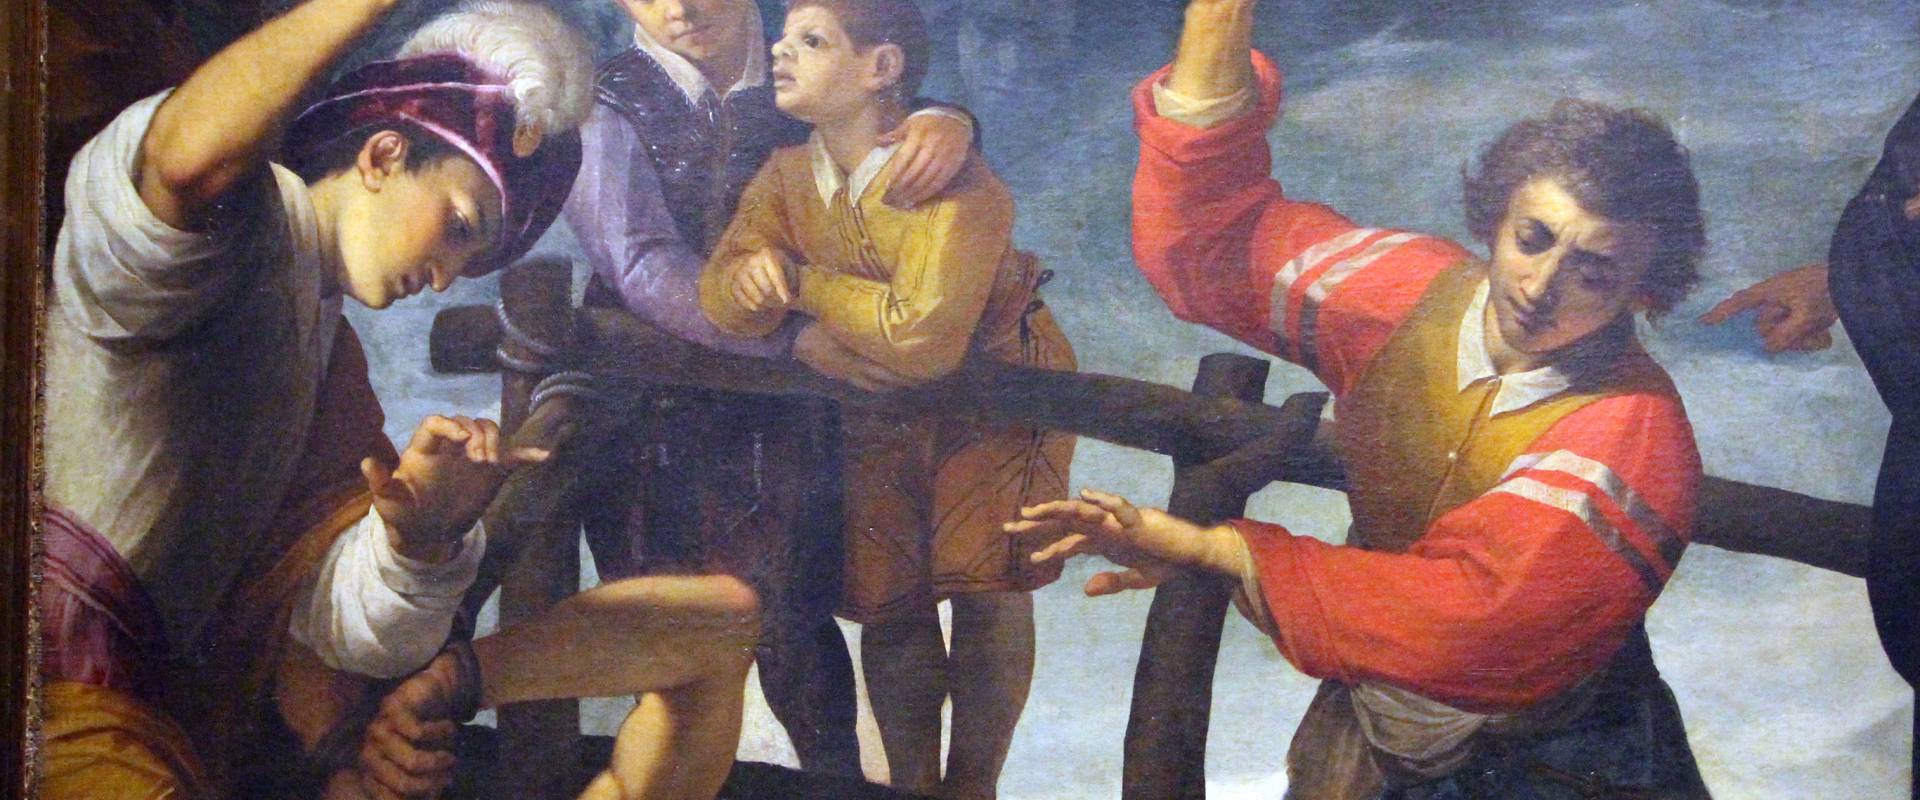 Jacopo ligozzi, martirio dei ss. 4 coronati, 1596 (museo città di ravenna) 003 photo by Sailko